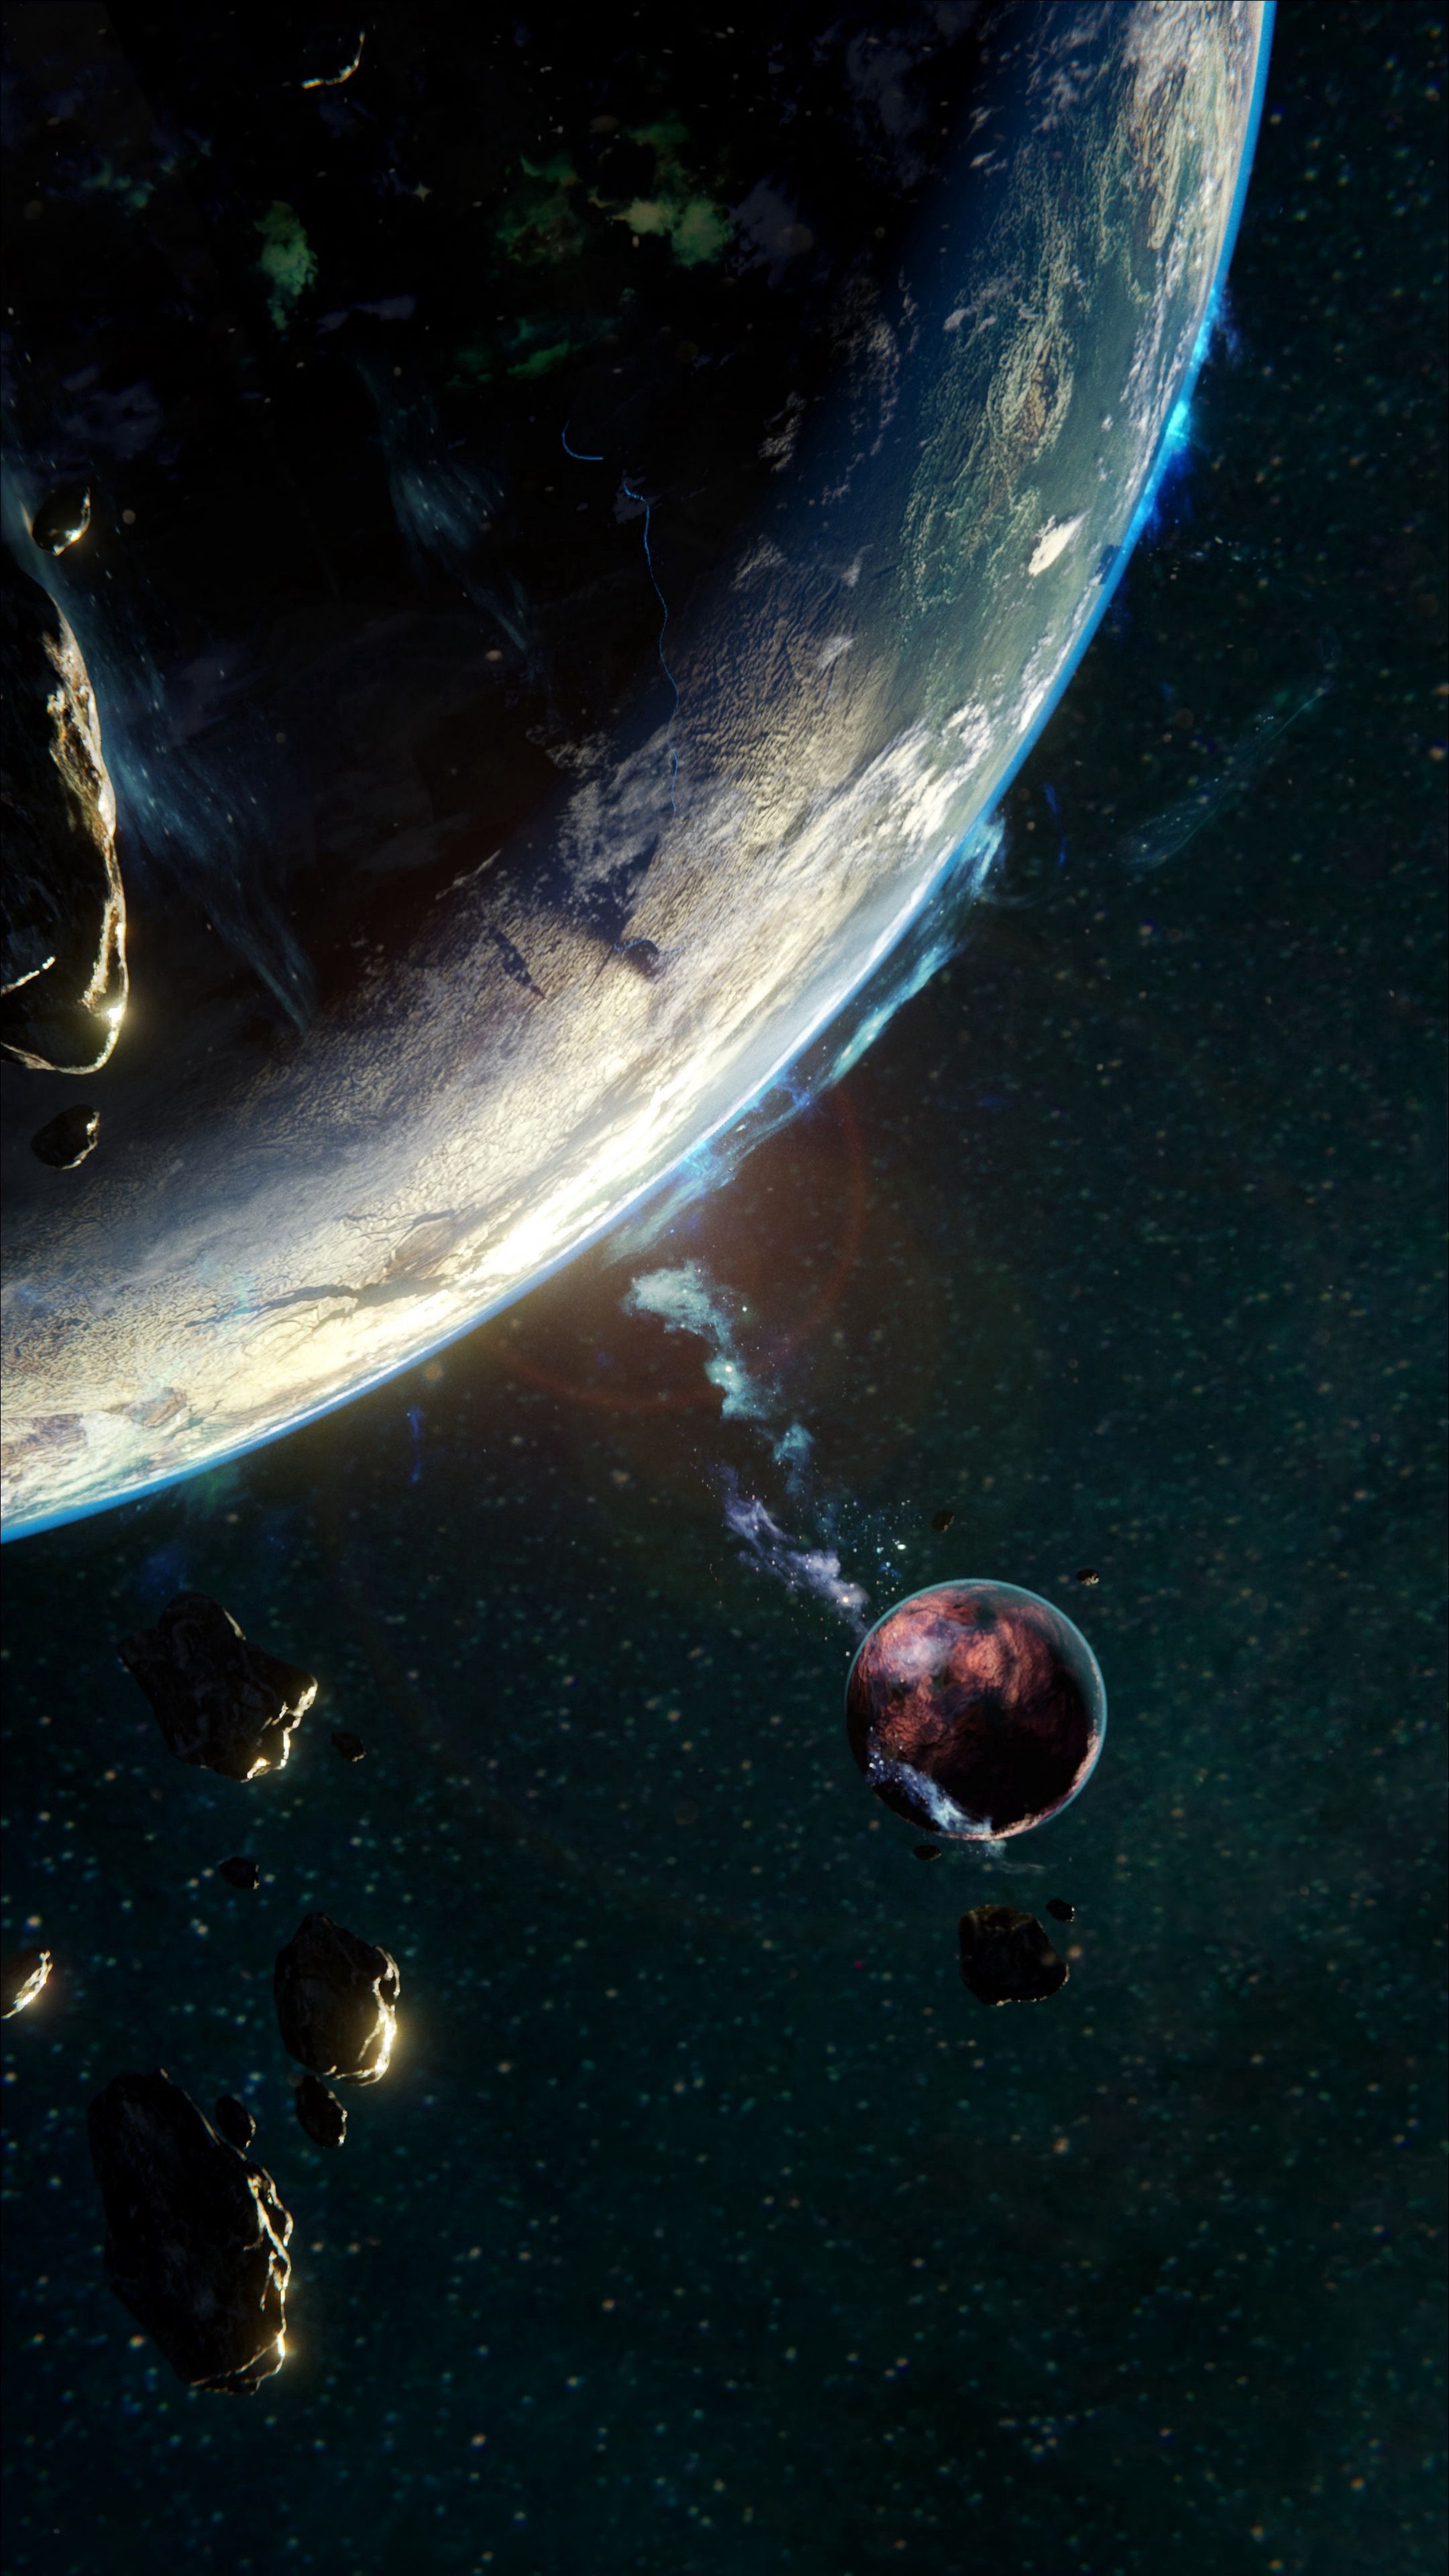 Descarga gratuita de fondo de pantalla para móvil de Satélite, Asteroide, Planeta, Universo.